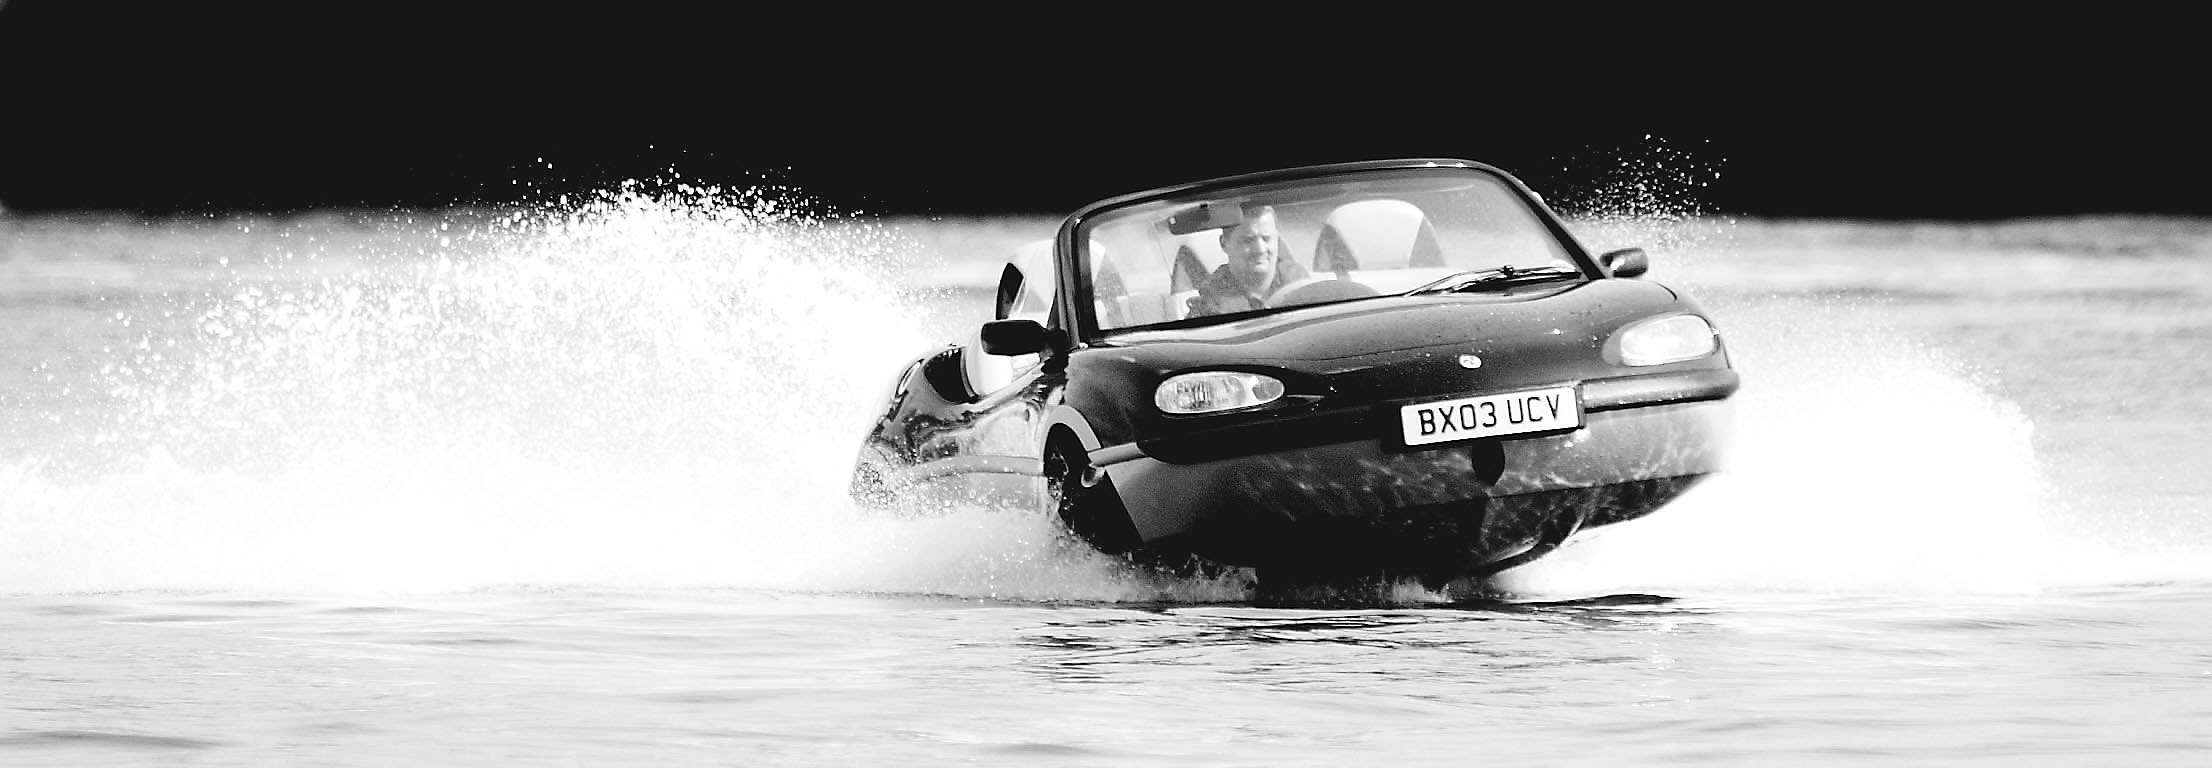 9月3日,在英国伦敦的泰晤士河,世界上首辆高速水陆两用车从水中驶上